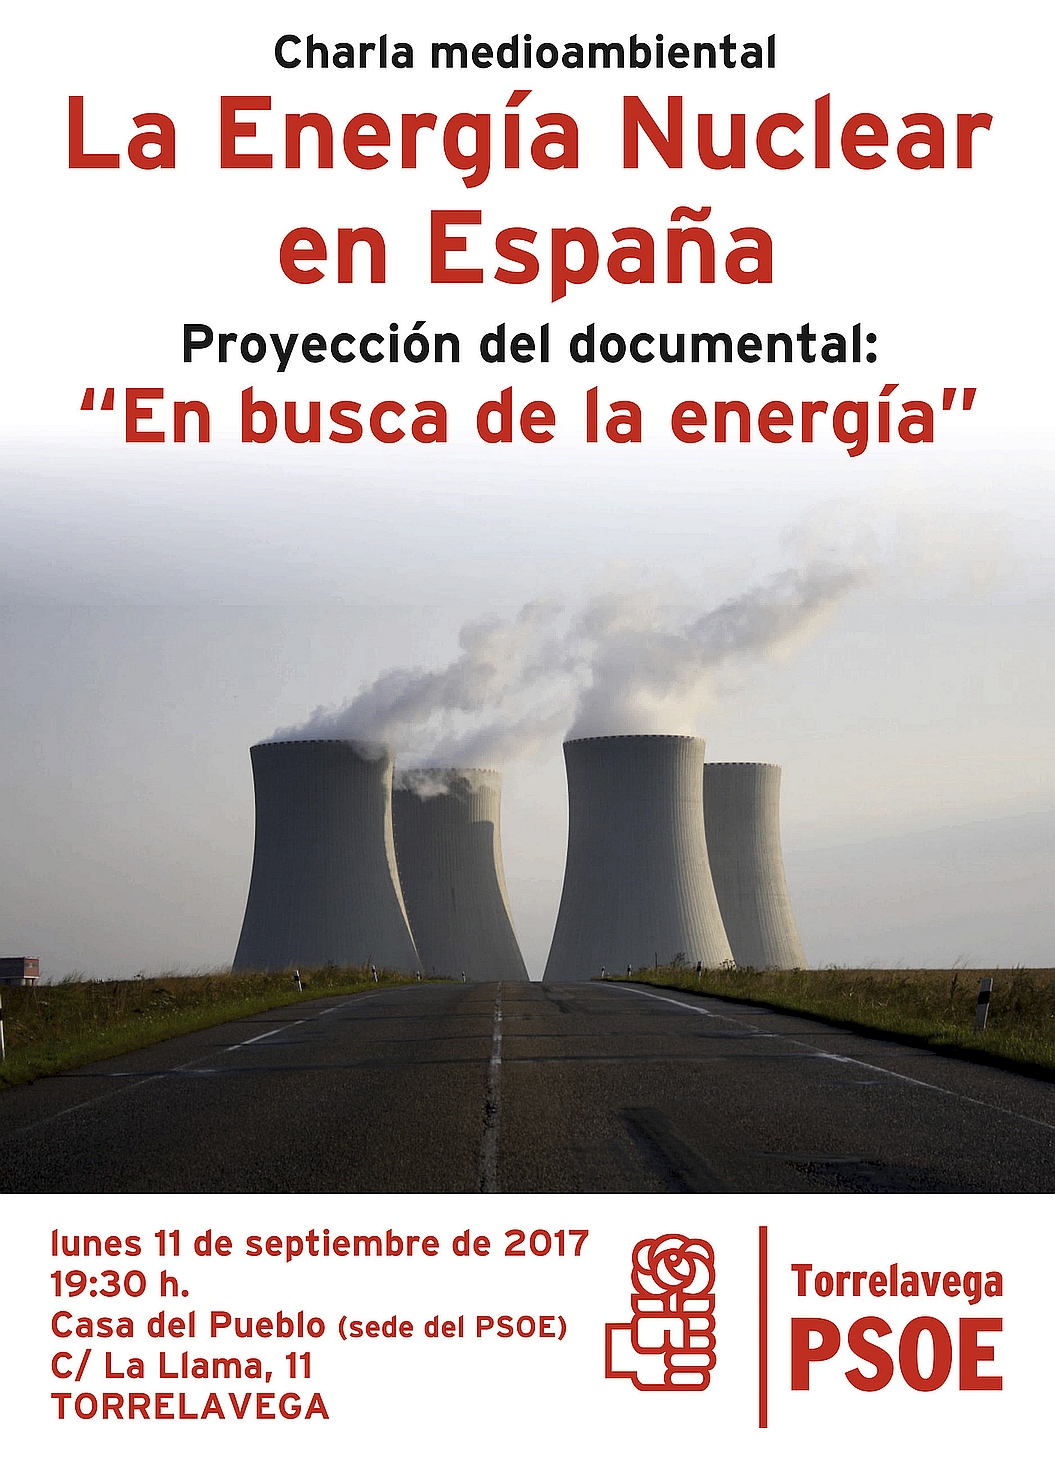 La Energía Nuclear a debate en la sede del PSOE de Torrelavega